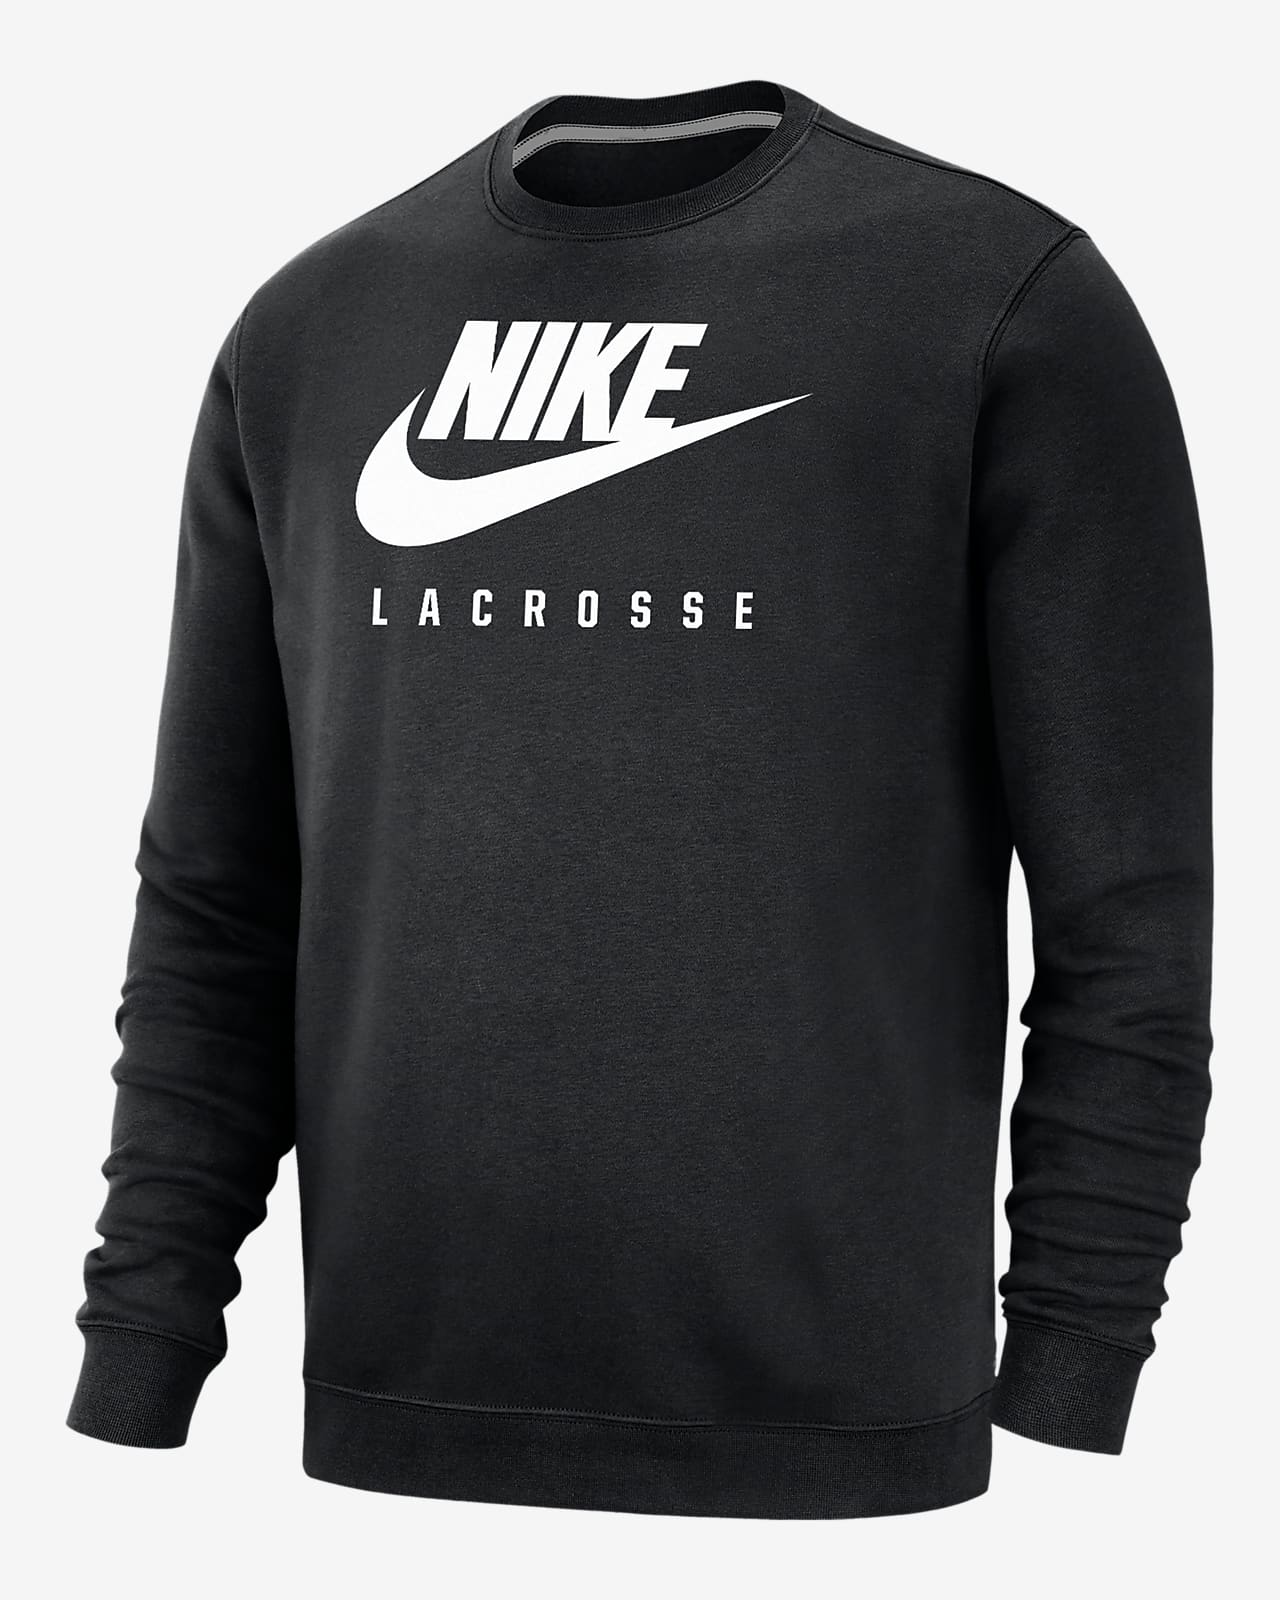 Nike Swoosh Lacrosse Men's Crew-Neck Sweatshirt